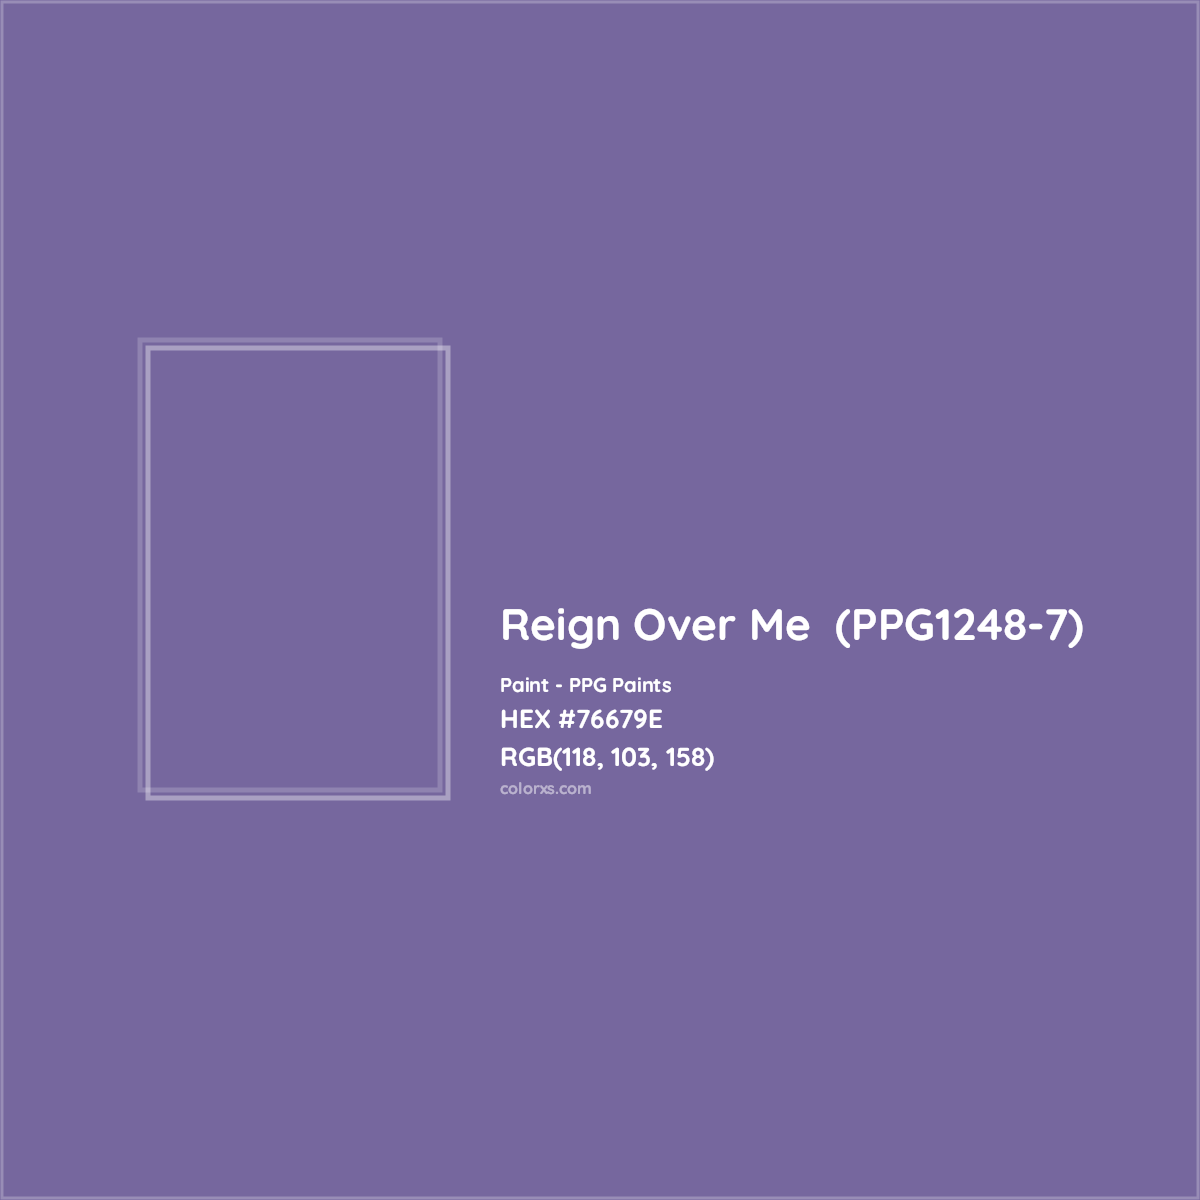 HEX #76679E Reign Over Me  (PPG1248-7) Paint PPG Paints - Color Code